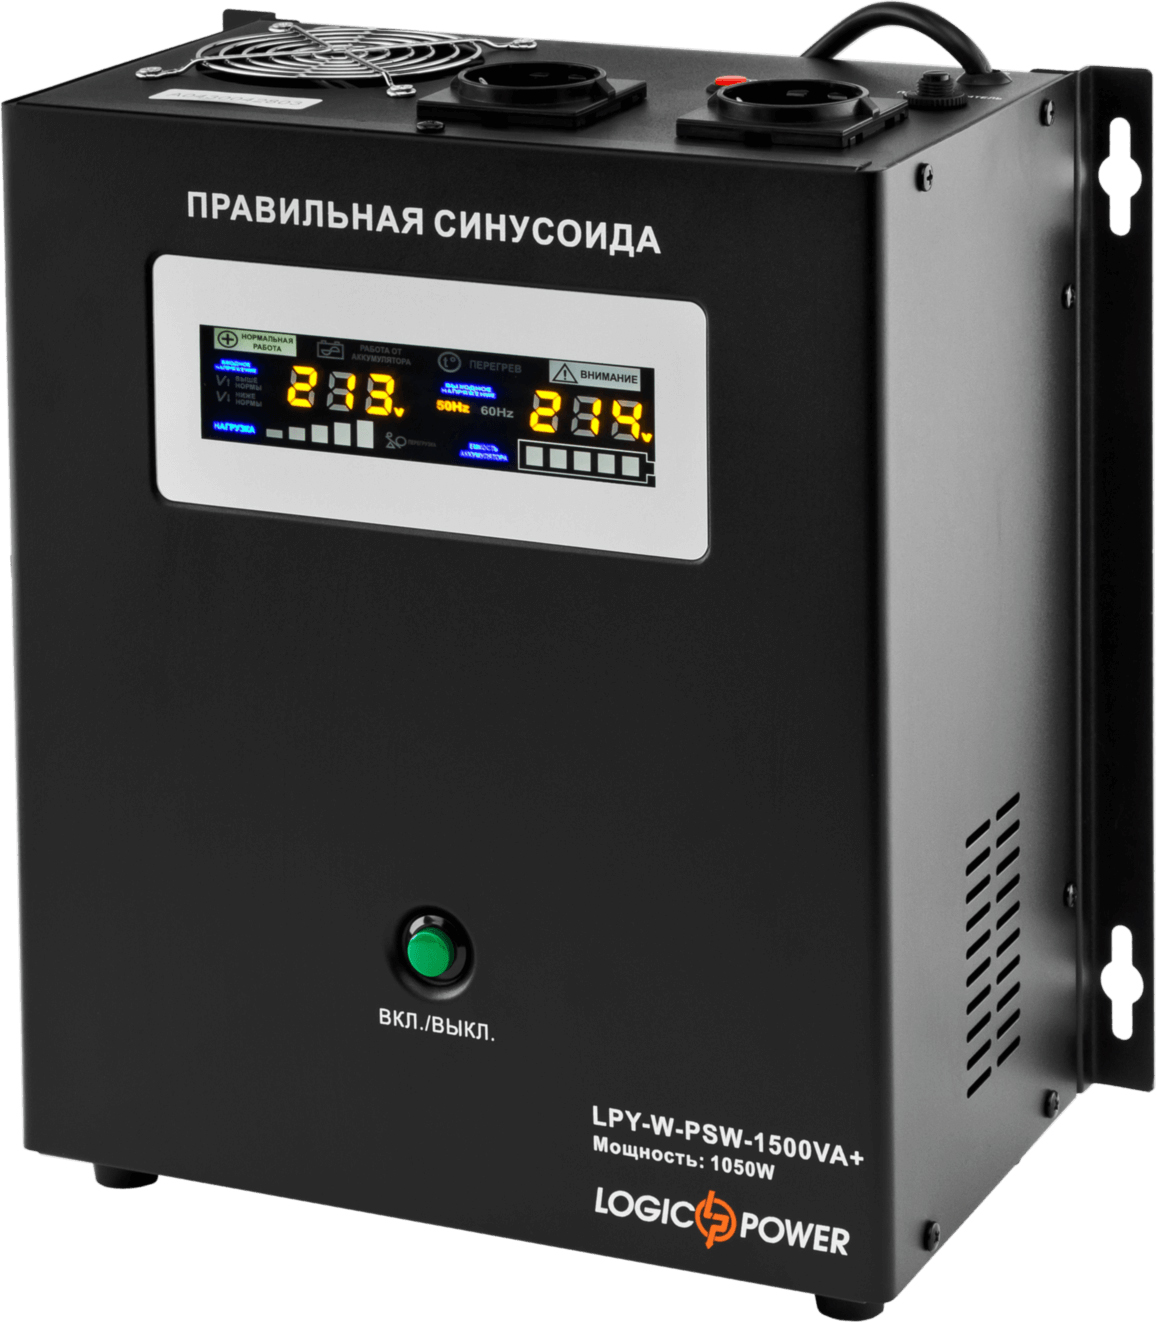 ИБП LogicPower LPY-W-PSW-1500VA+ (1050 Вт) 10A/15A (LP4145) в Киеве